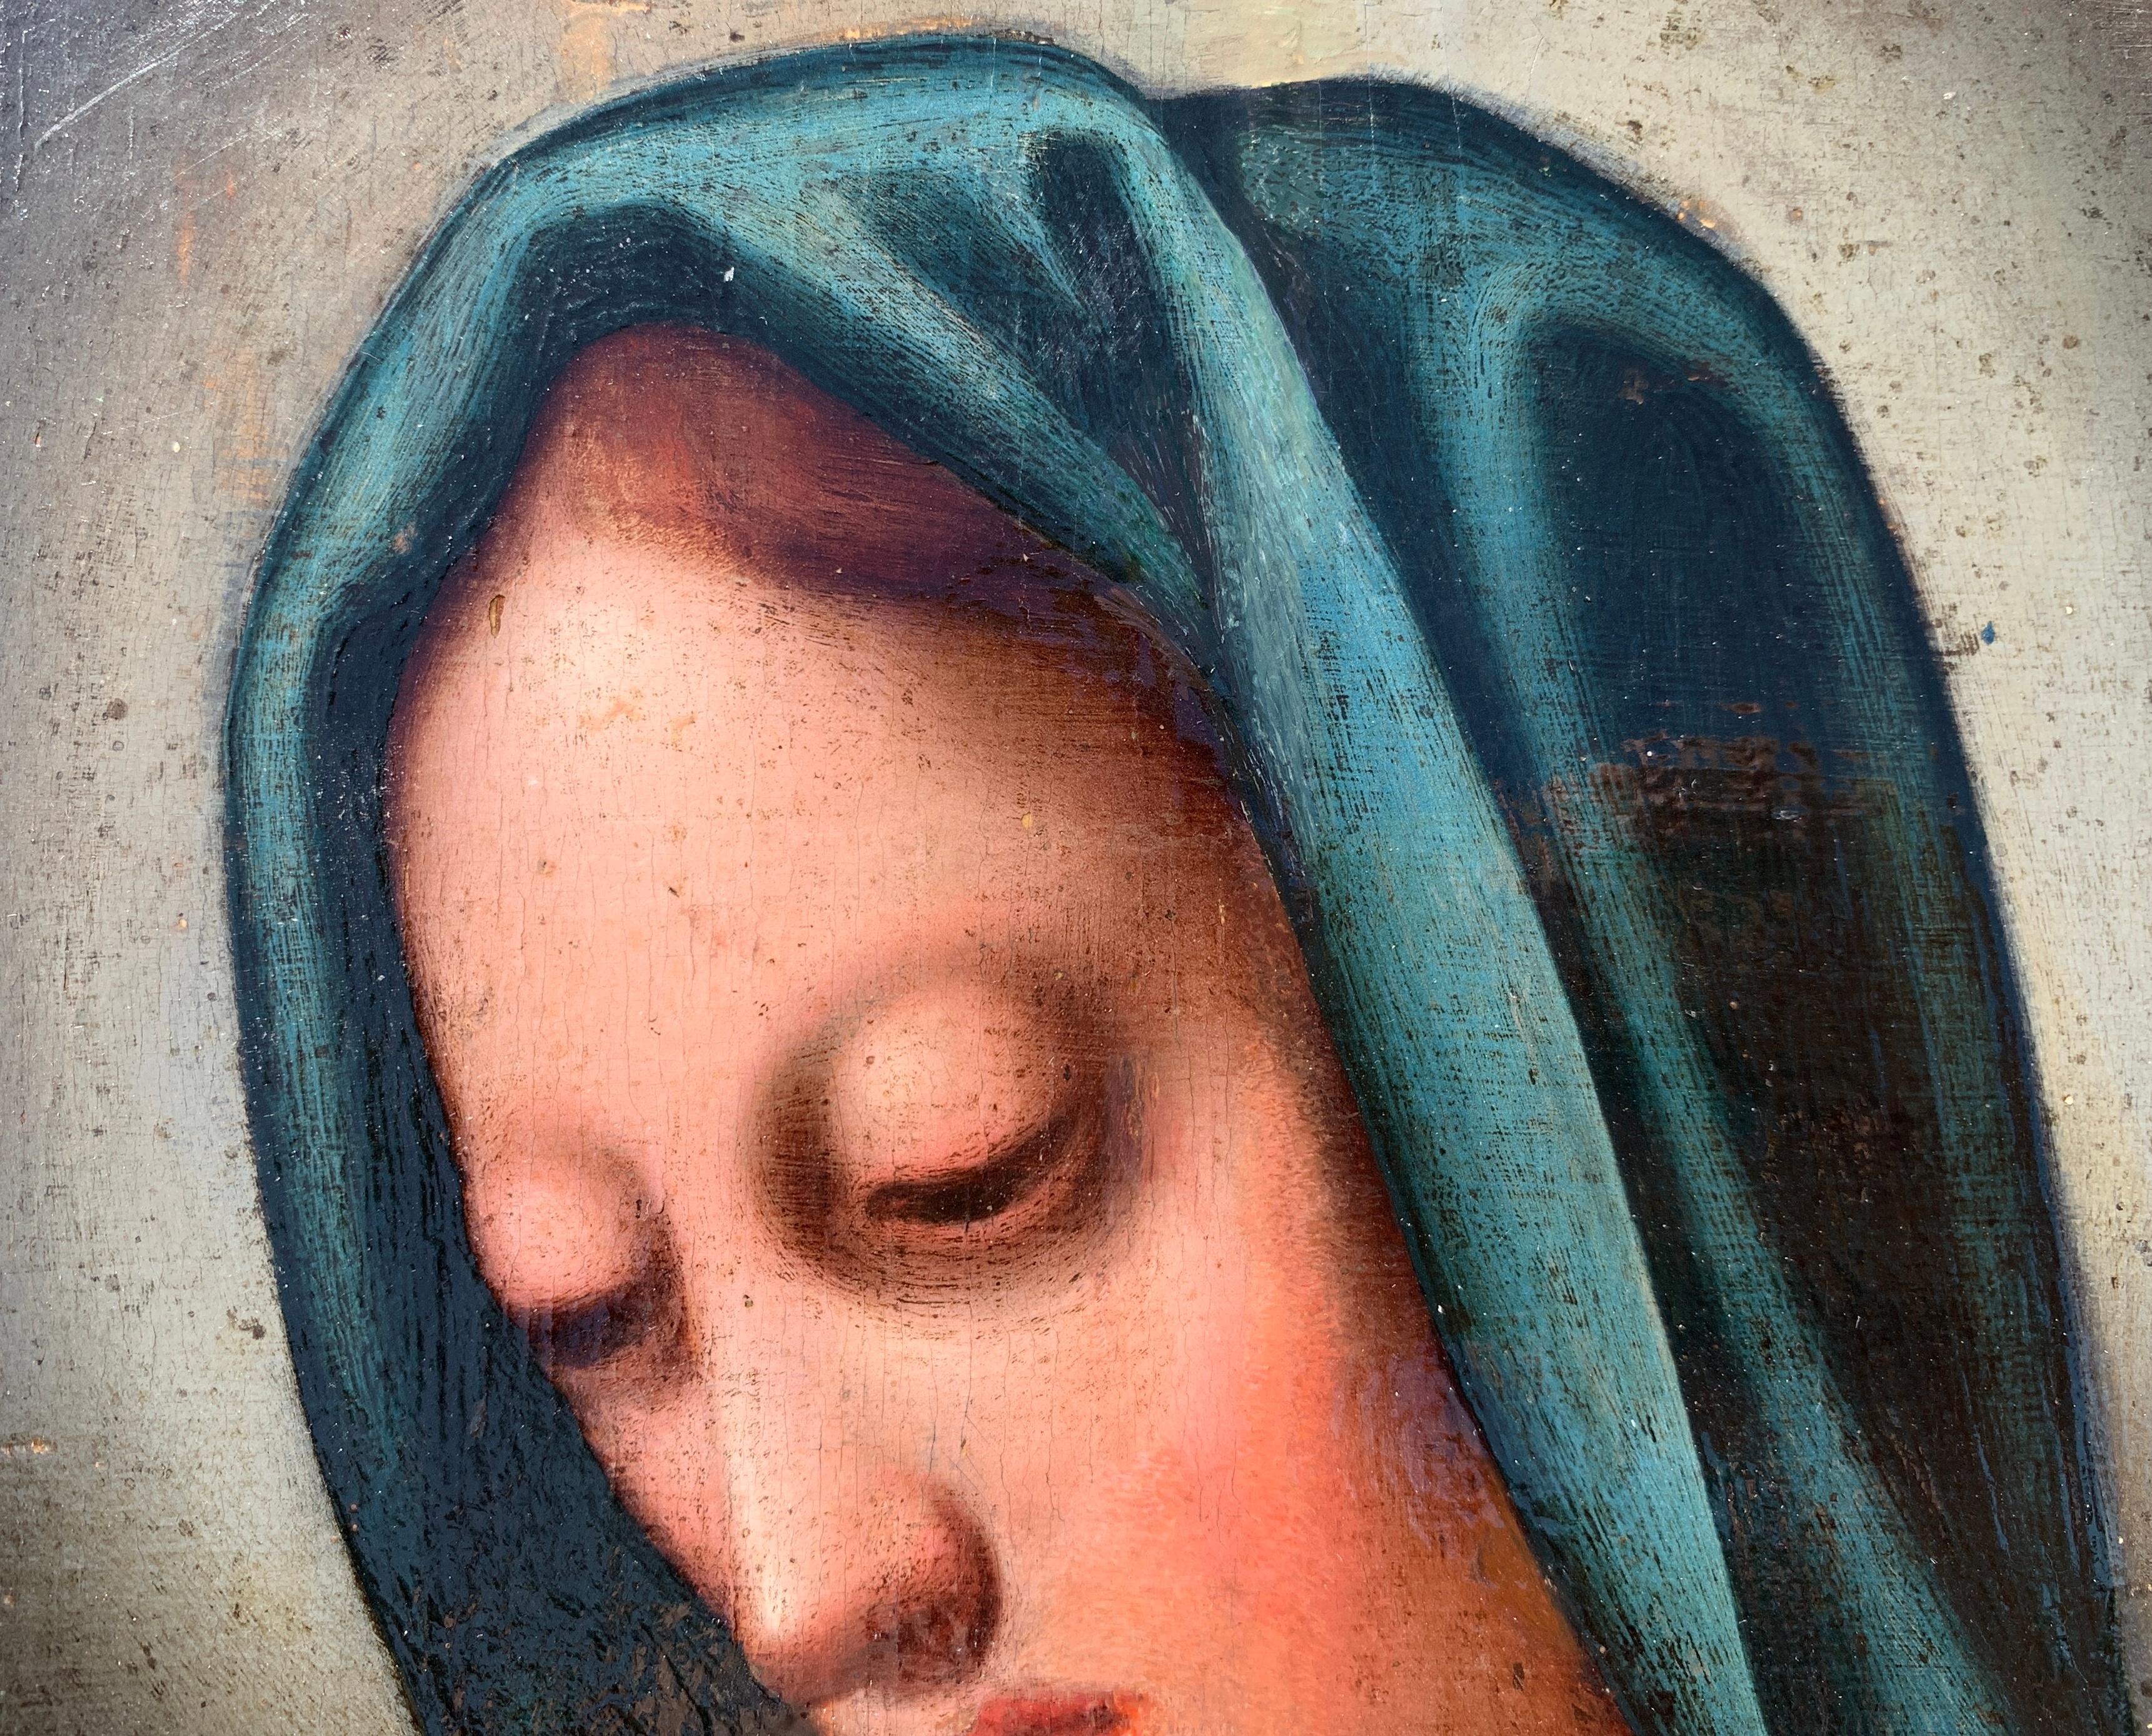 Peintre italien (XVIIe siècle) - Madone.

32 x 25 cm sans cadre, 40 x 33 cm avec cadre.

Peinture à l'huile ancienne sur bois, dans un cadre en bois.

Rapport de condition : Bon état du support en bois et de la surface picturale, il y a des signes